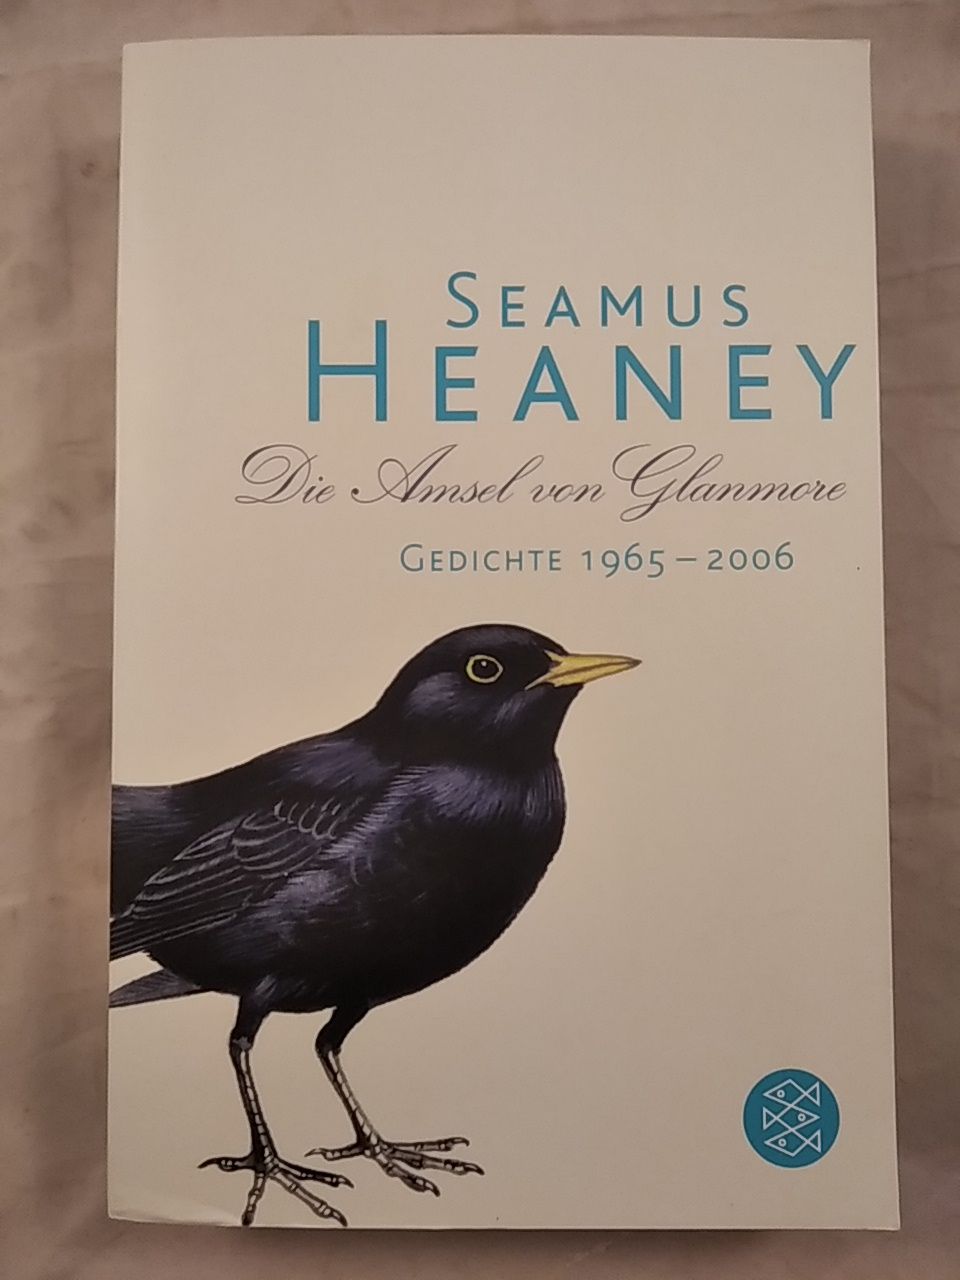 Die Amsel von Glanmore - Gedichte 1965 - 2006. - Heaney, Seamus